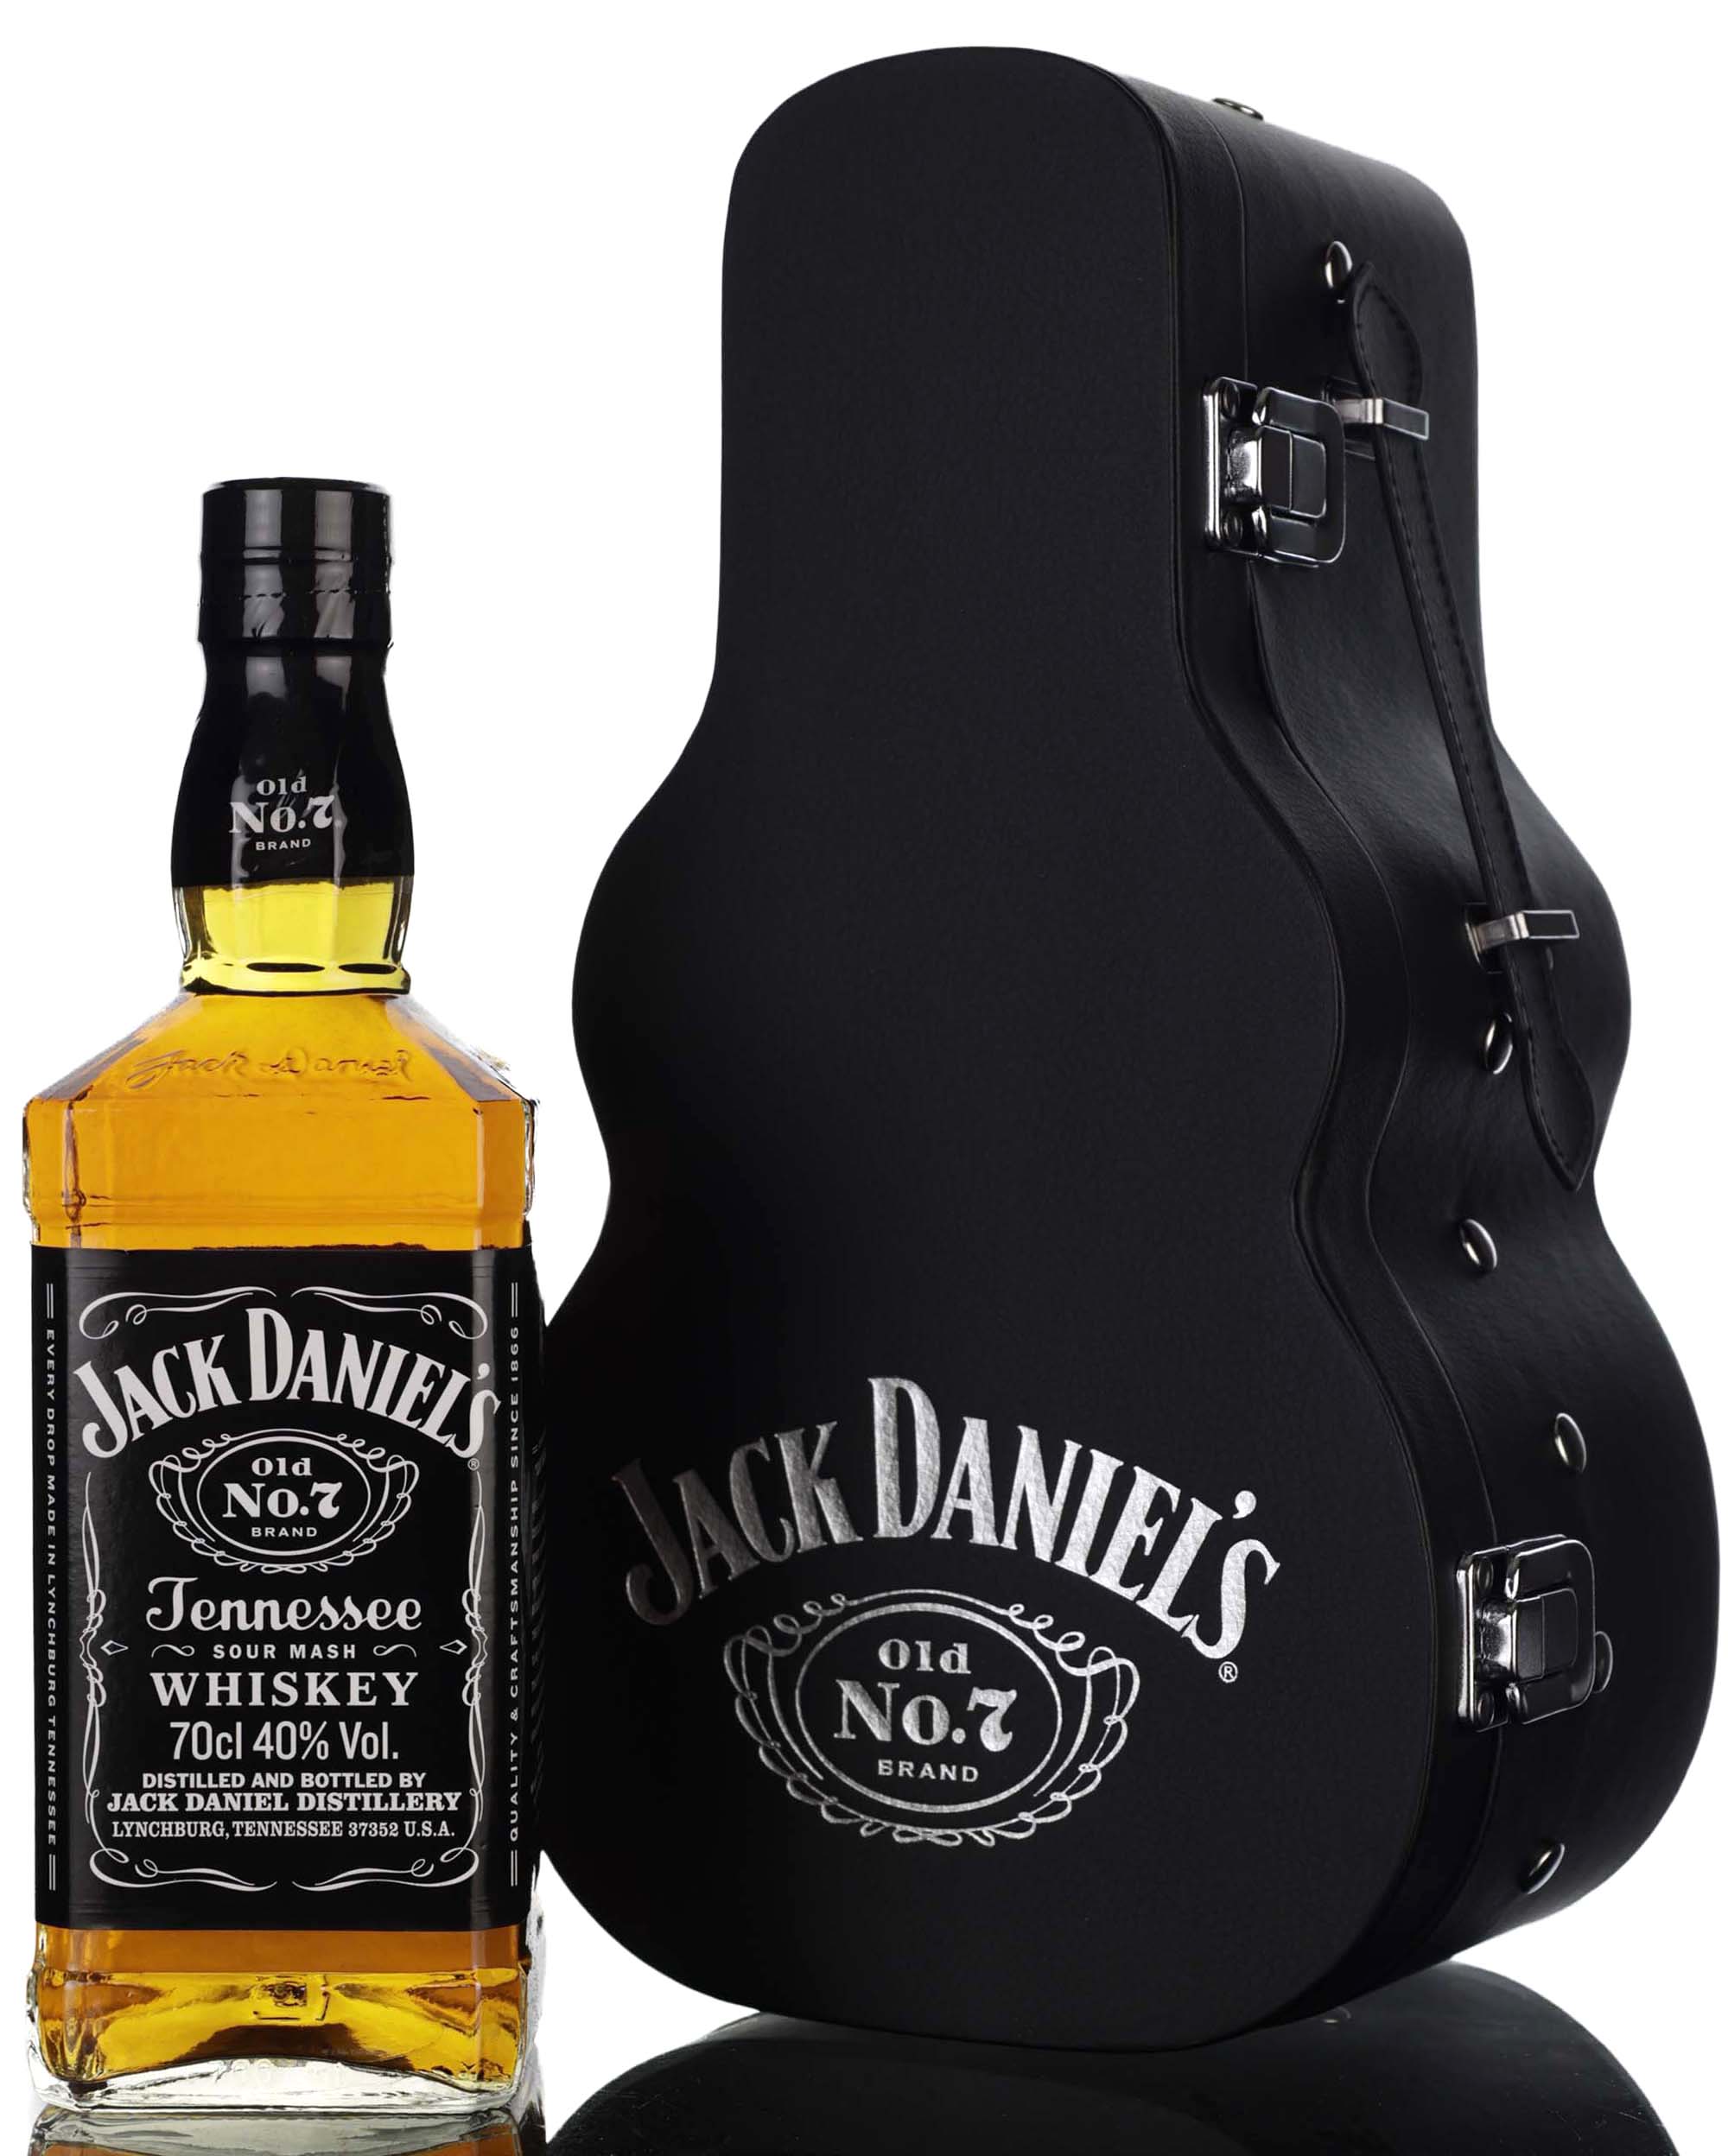 Jack Daniels Old No.7 Brand - Guitar Presentation